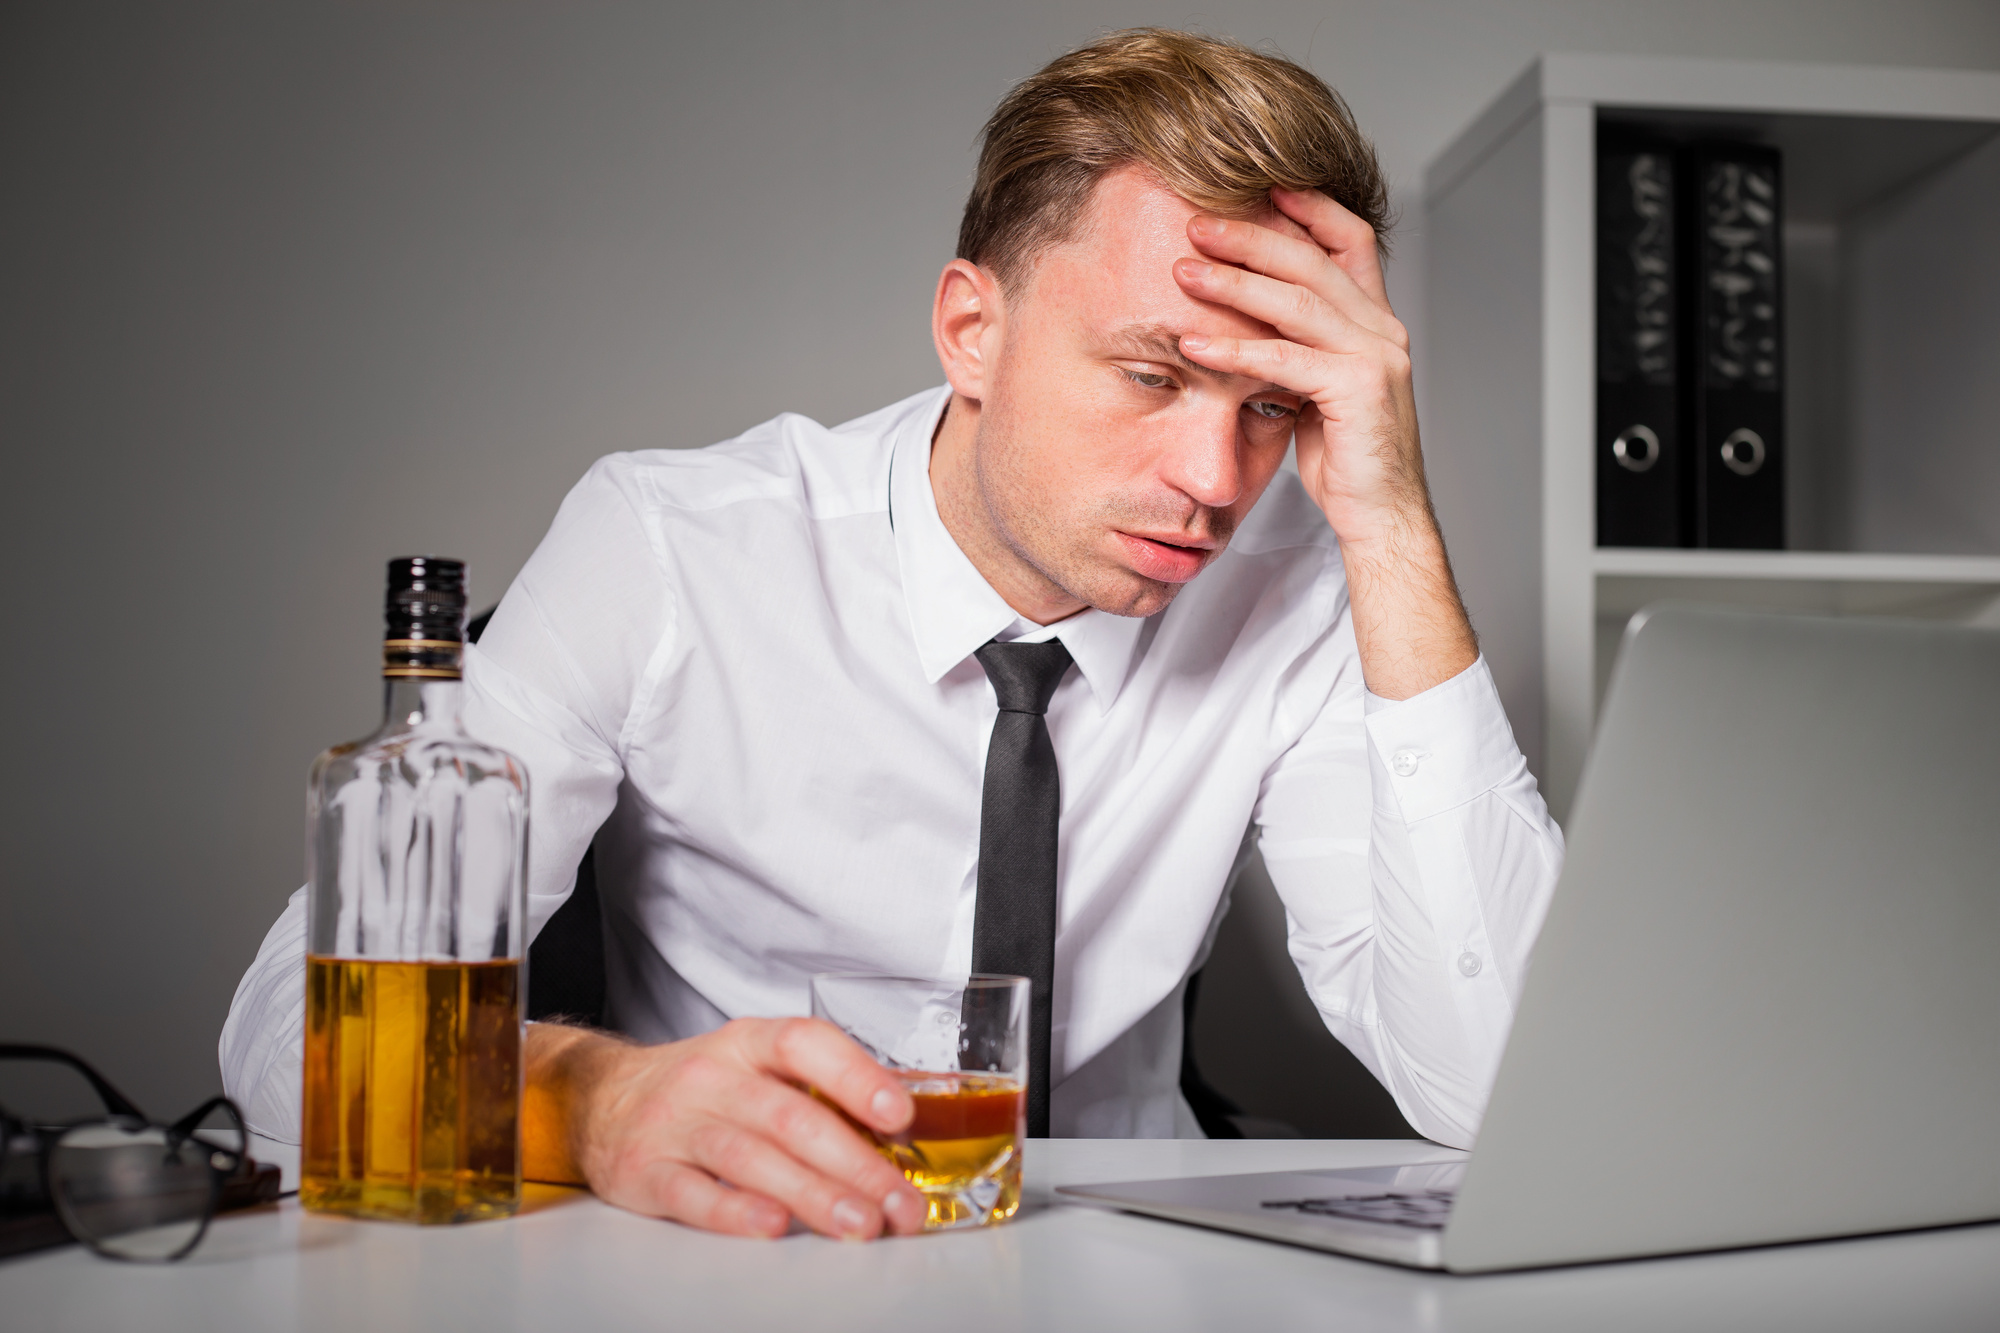 Μελέτη δείχνει πως οι άνθρωποι που εργάζονται πολλές ώρες τείνουν να πίνουν περισσότερο αλκοόλ